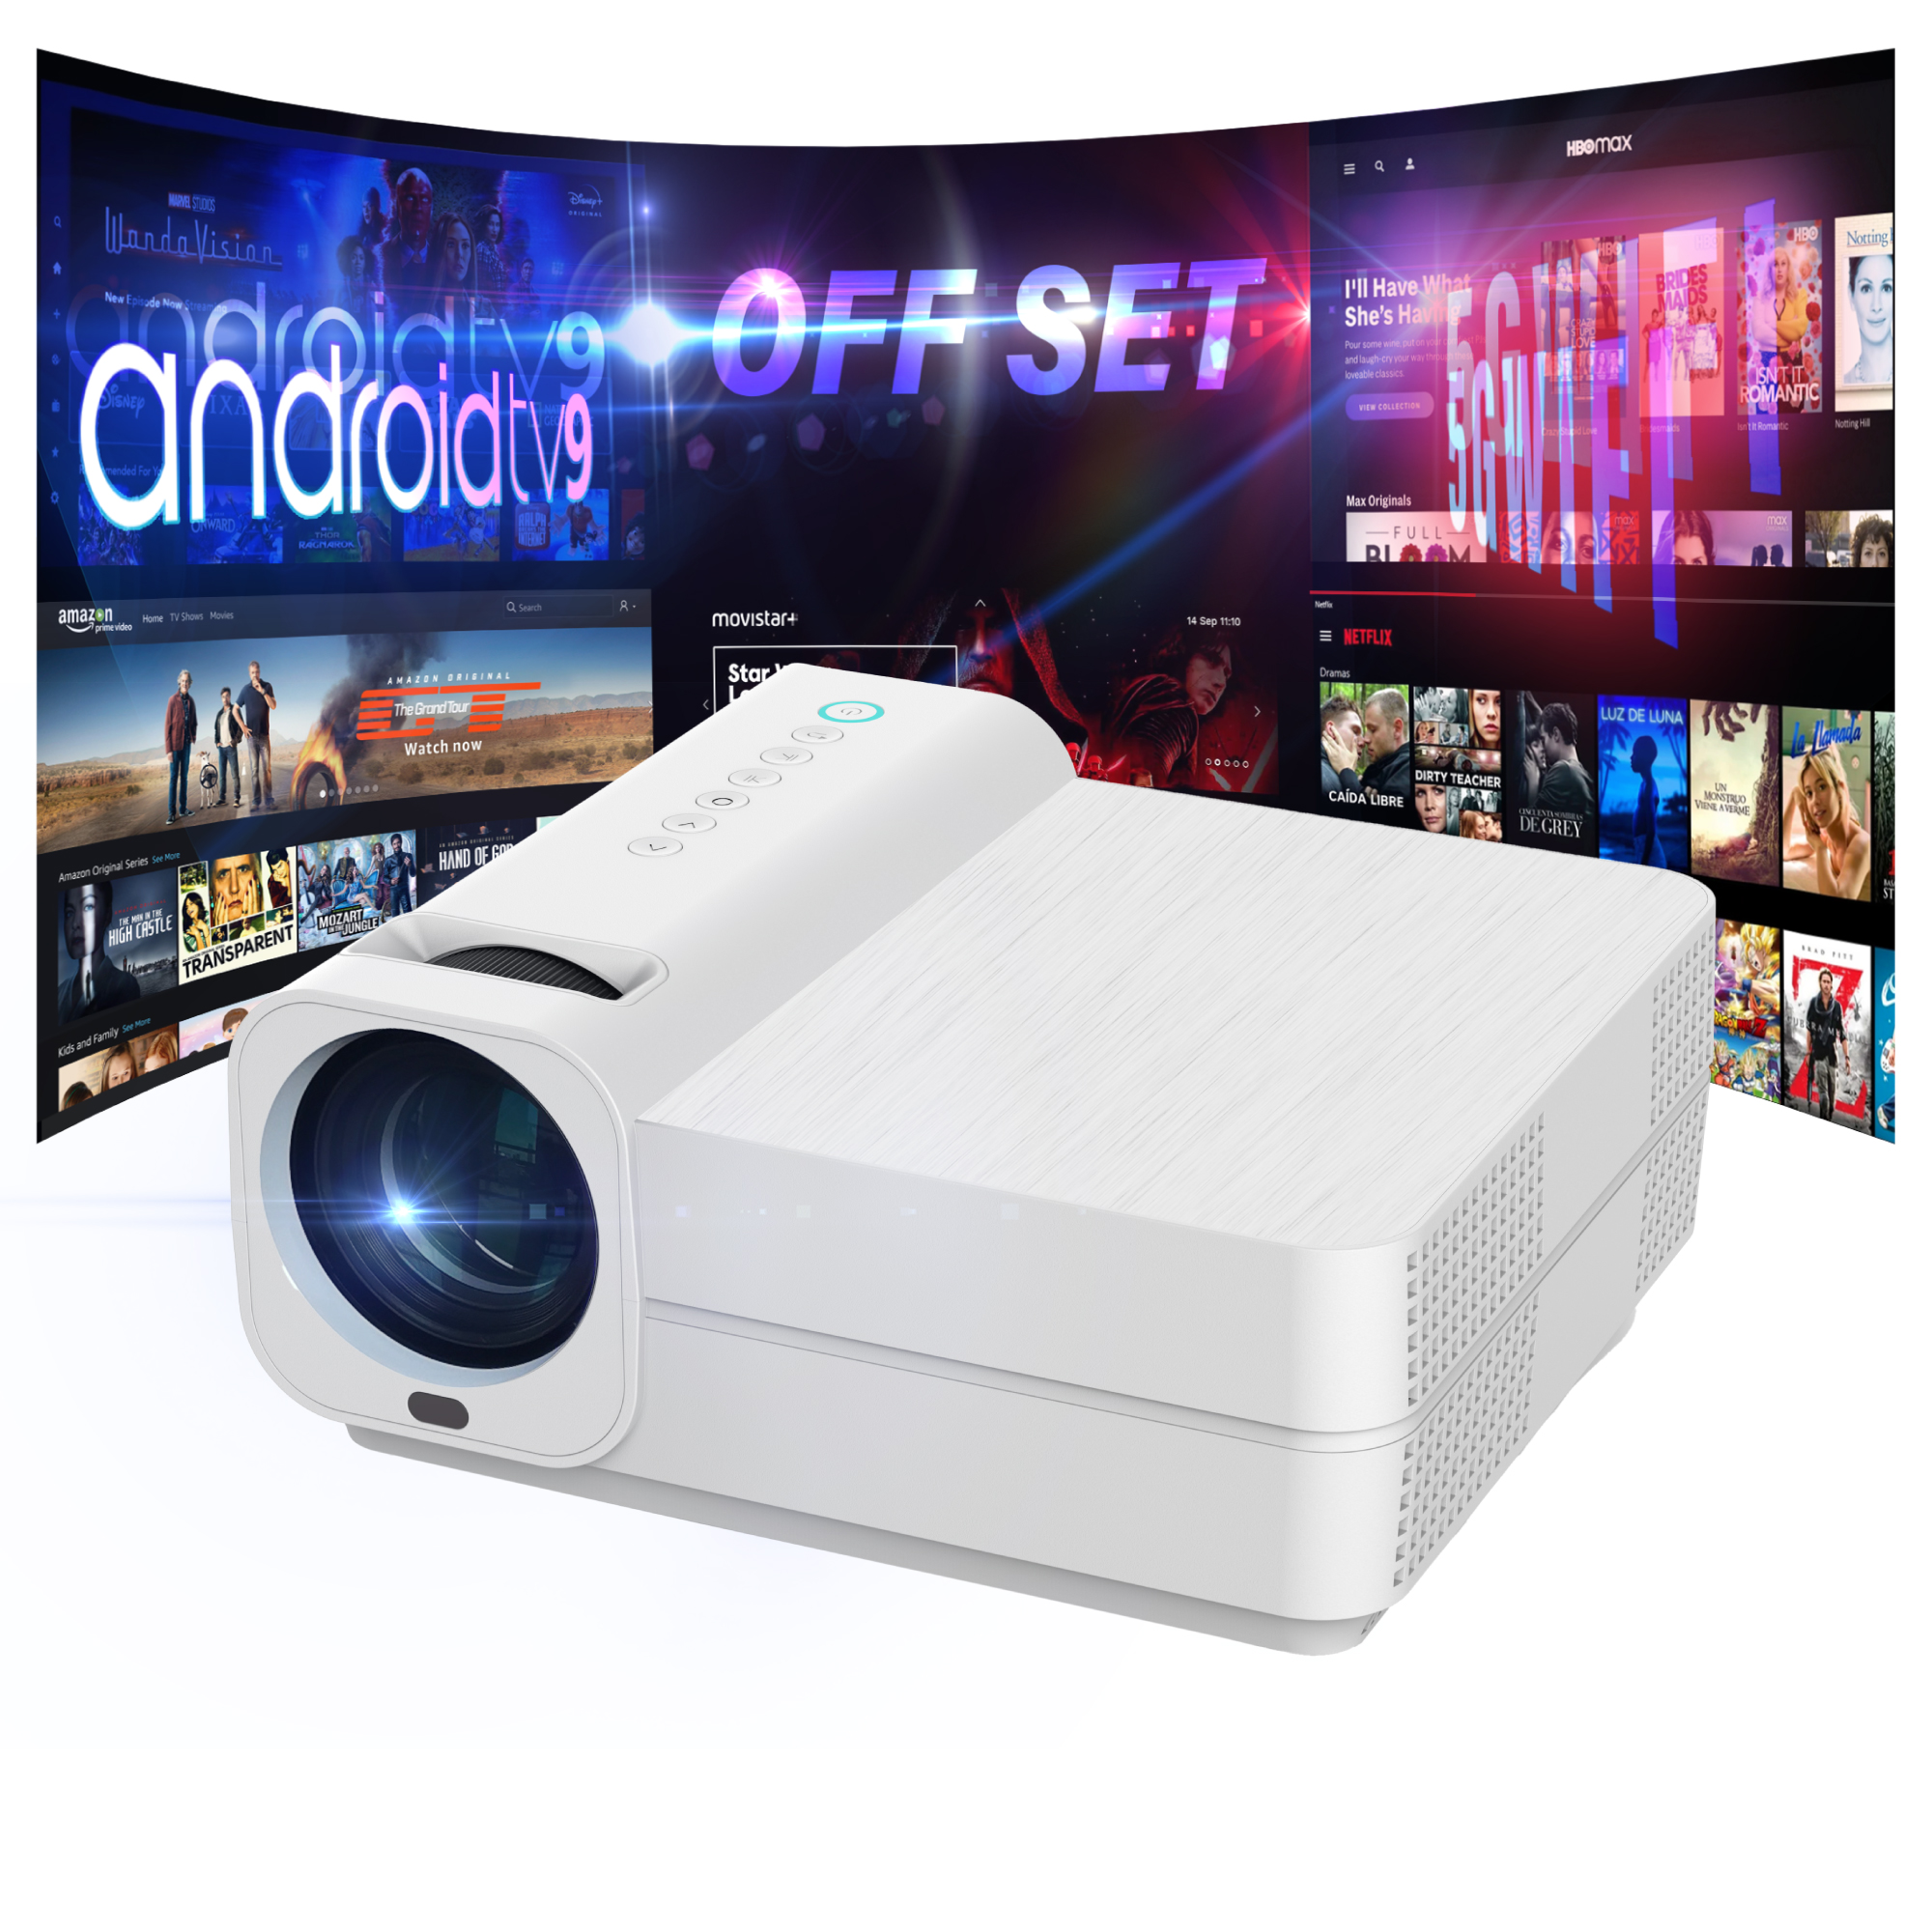 proyector Barato Luximagen HD700 con WiFi, Android, TDT, USB, HDMI, AC3, 2  años de garantía